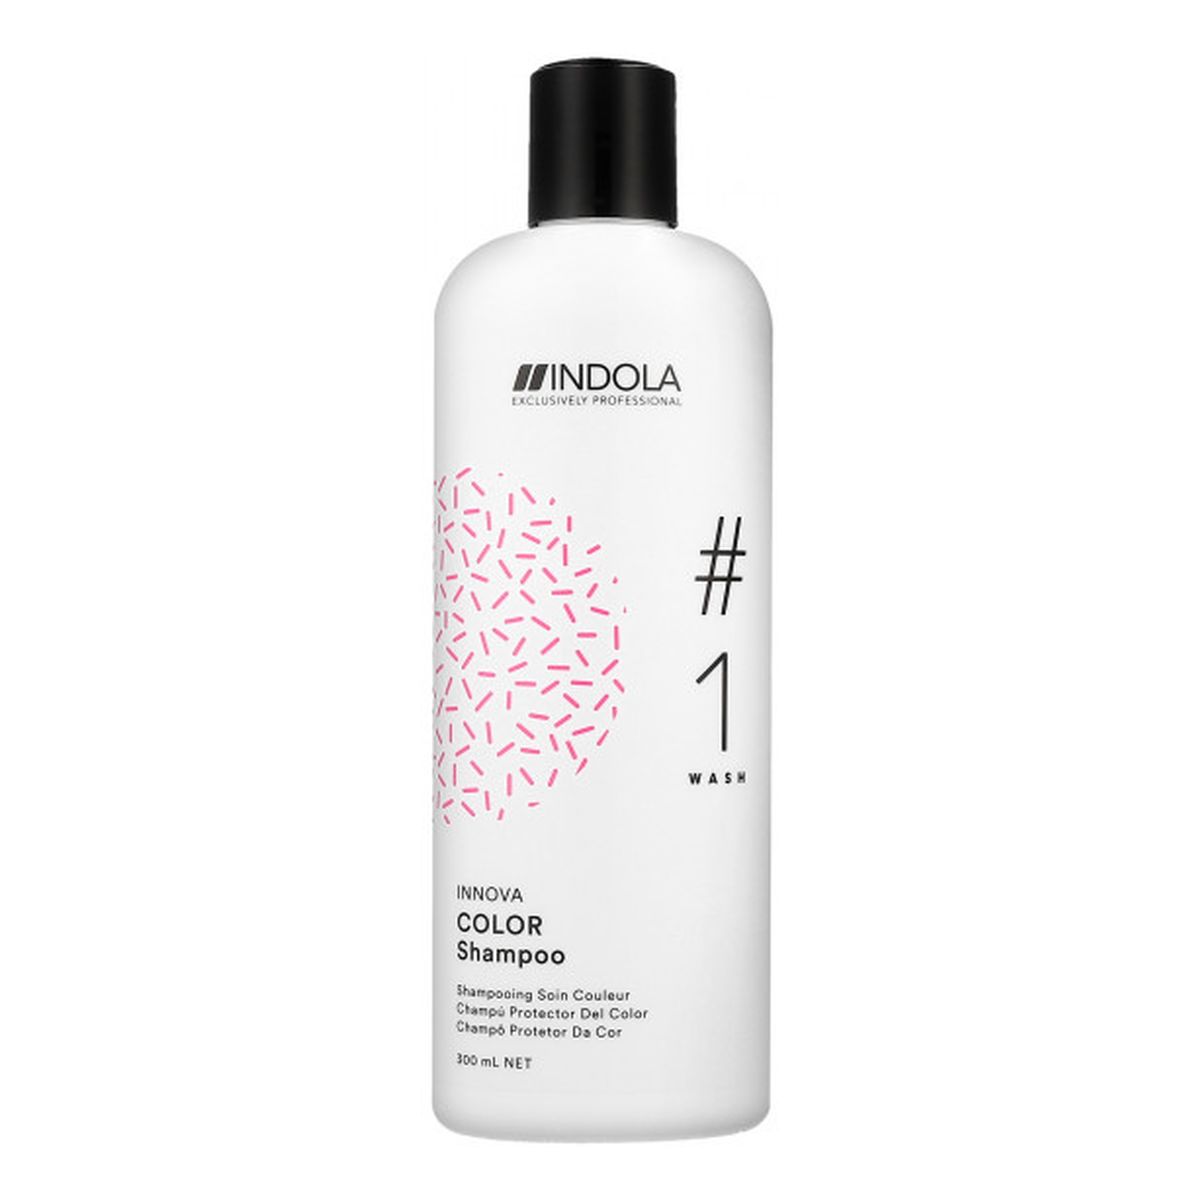 Indola INNOVA Color #1 szampon do włosów farbowanych z proteinami jedwabiu 300ml